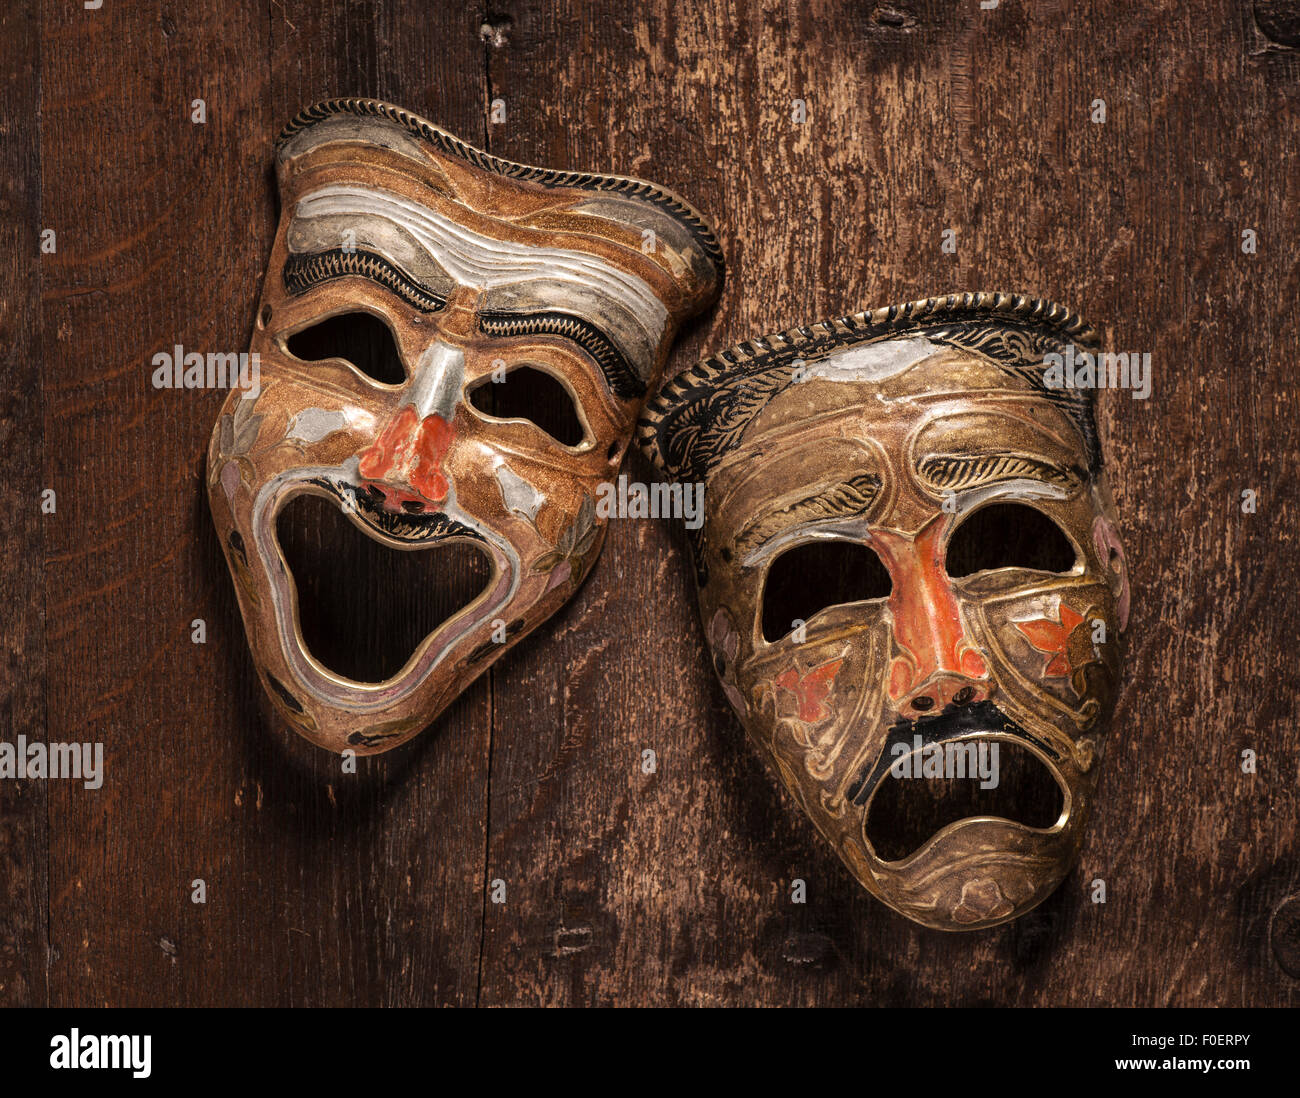 Komik und Tragik Masken auf hölzernen Hintergrund liegen. Still Life zeigt Emotionen durch den Kontrast von Freude und Trauer. Stockfoto